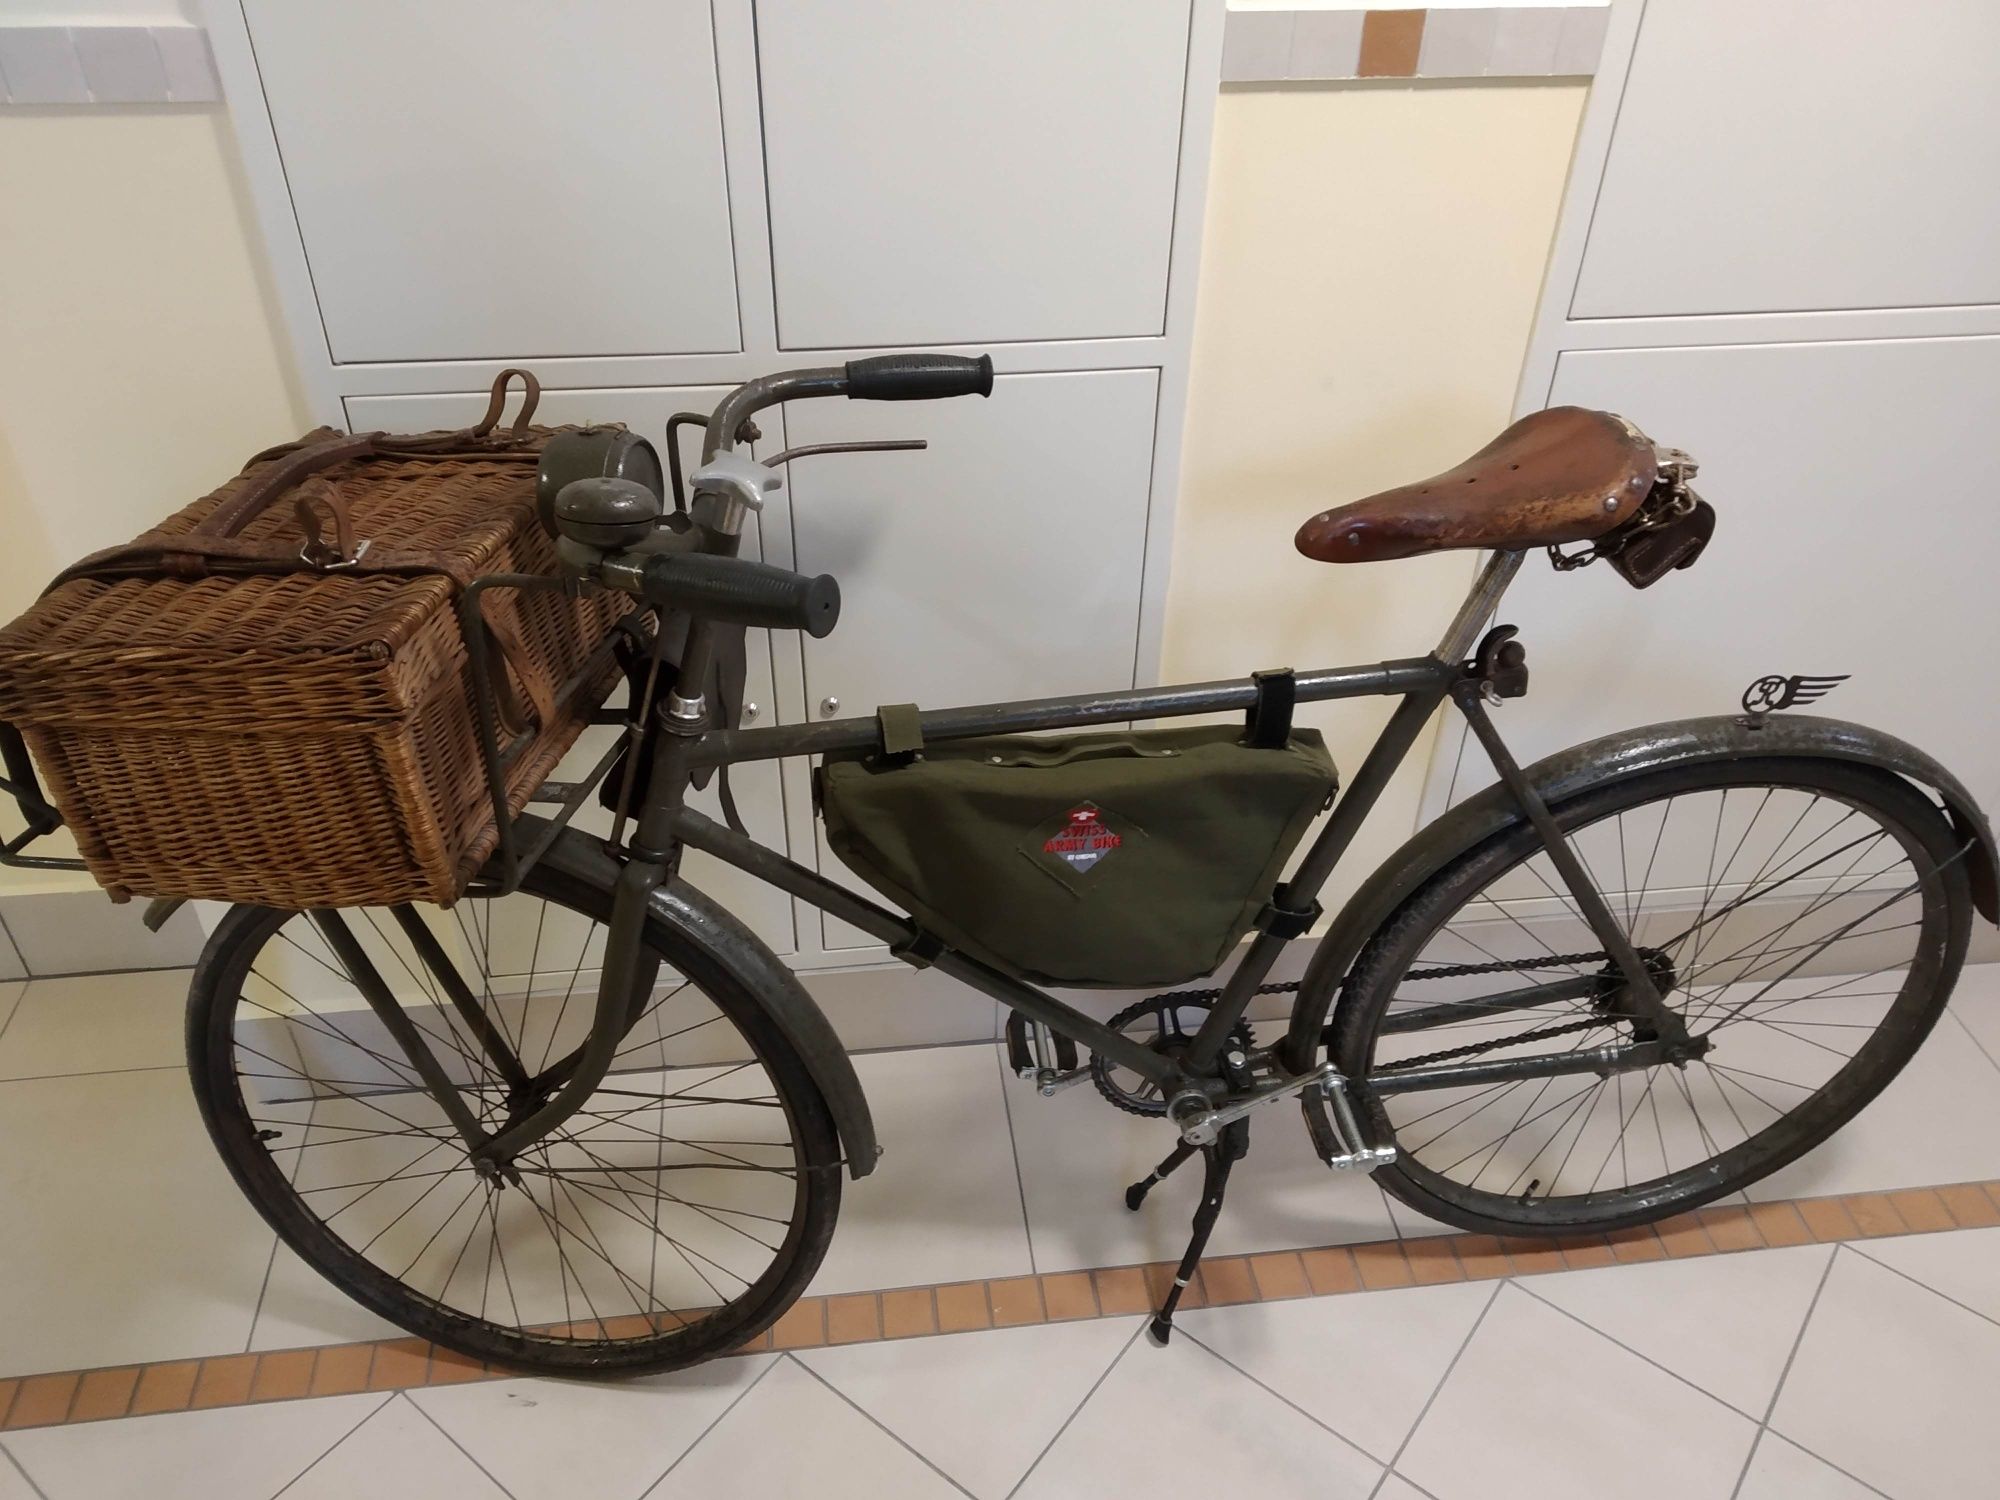 Stary wojskowy rower z przyczepą. Unikat niemiecki. II wojna